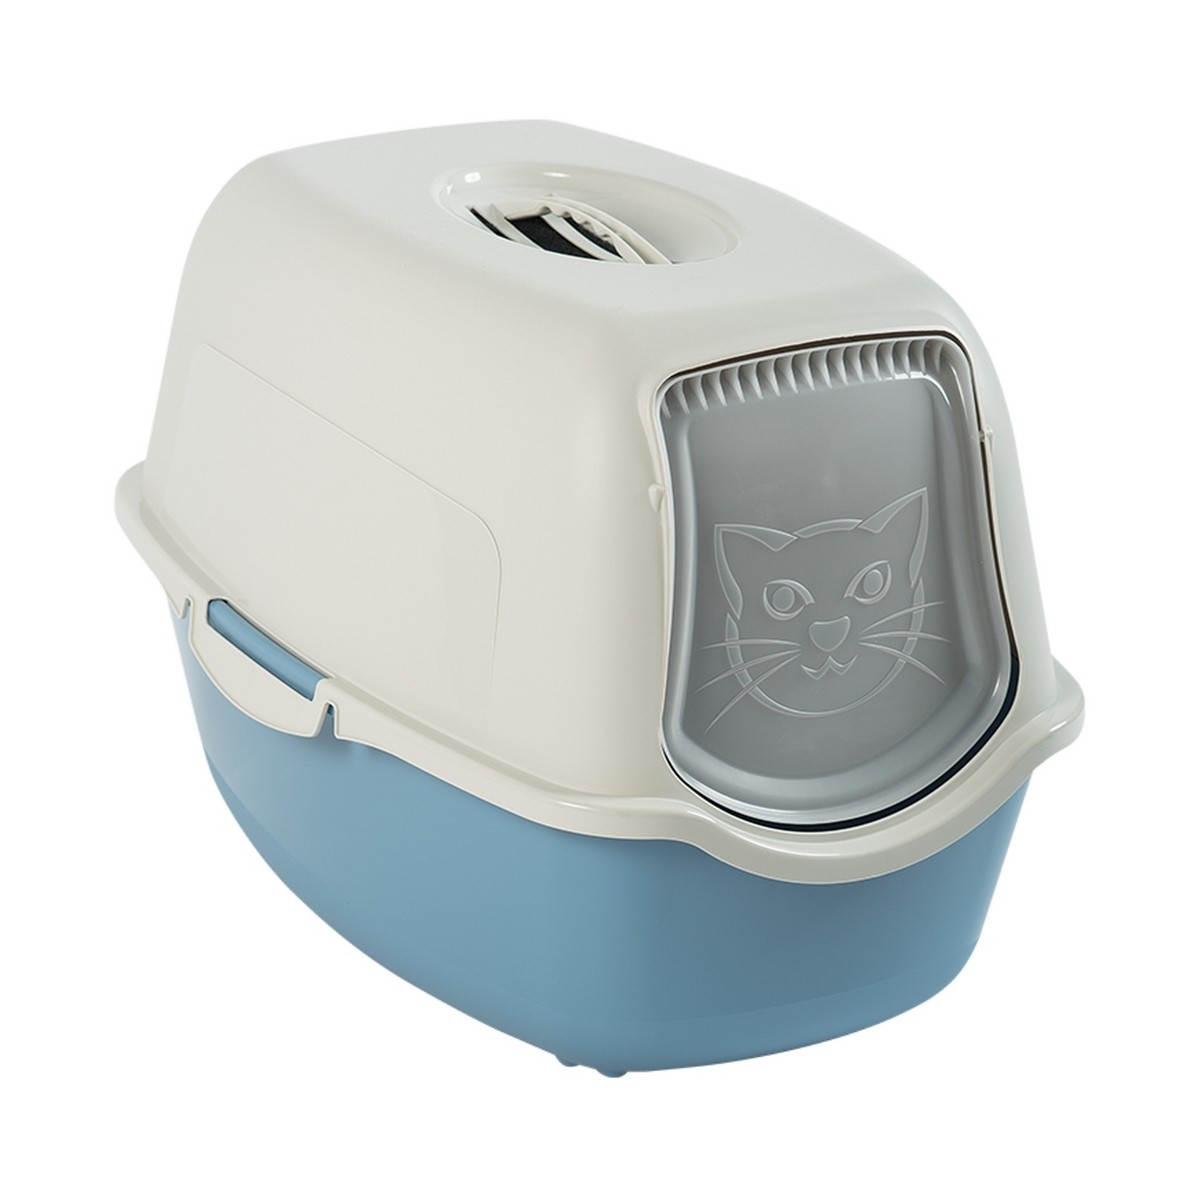 Maison de toilette pour chat anti odeurs - Oster Bionaire. Bac à litière,  maison de toilette et litière végétale ou cristaux pour chats et chatons.  Morin, accessoires pour chat